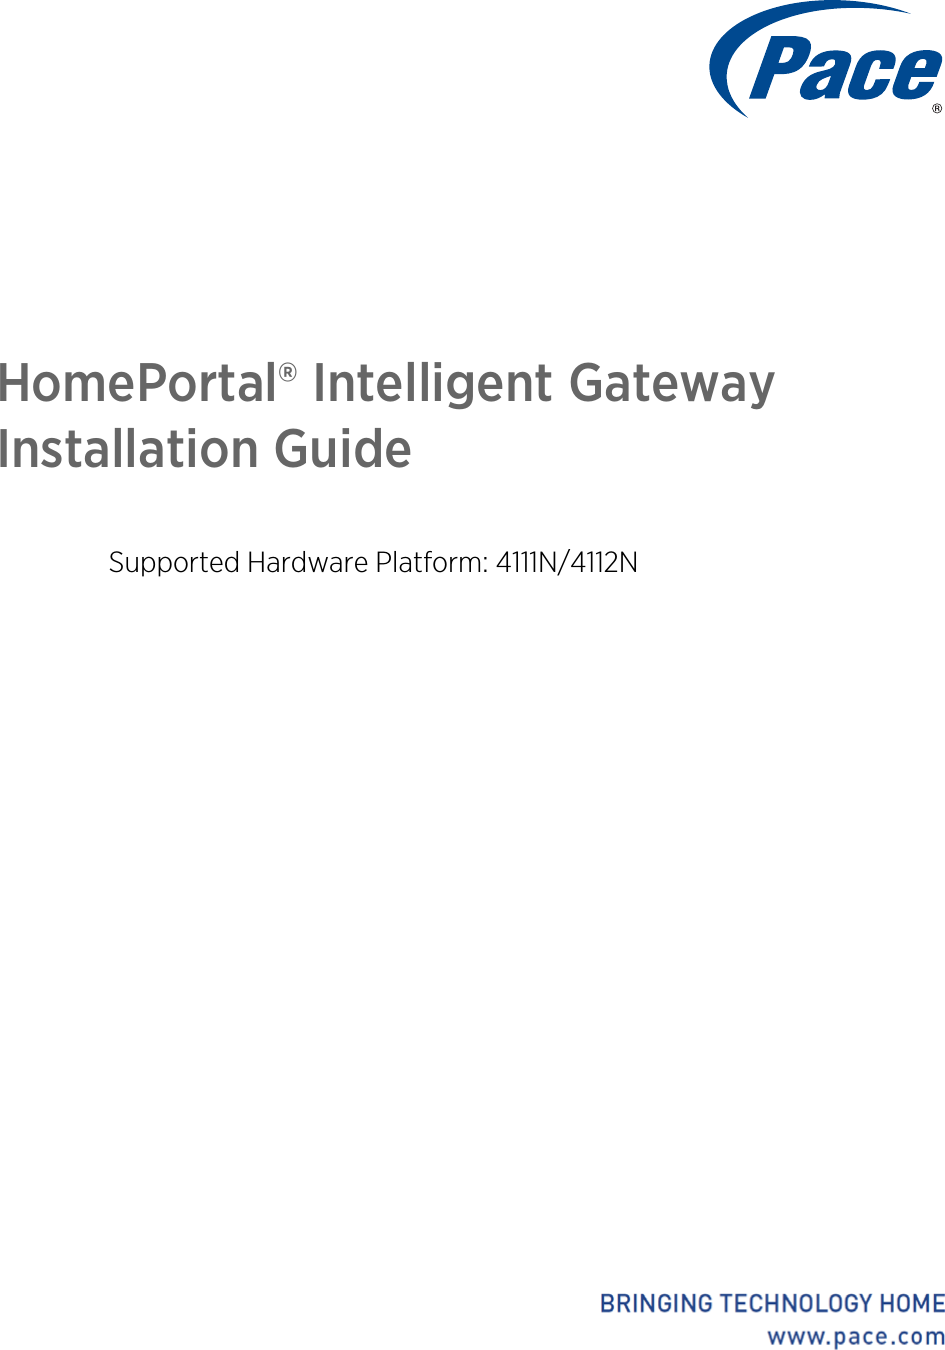 HomePortal® Intelligent Gateway Installation GuideSupported Hardware Platform: 4111N/4112N